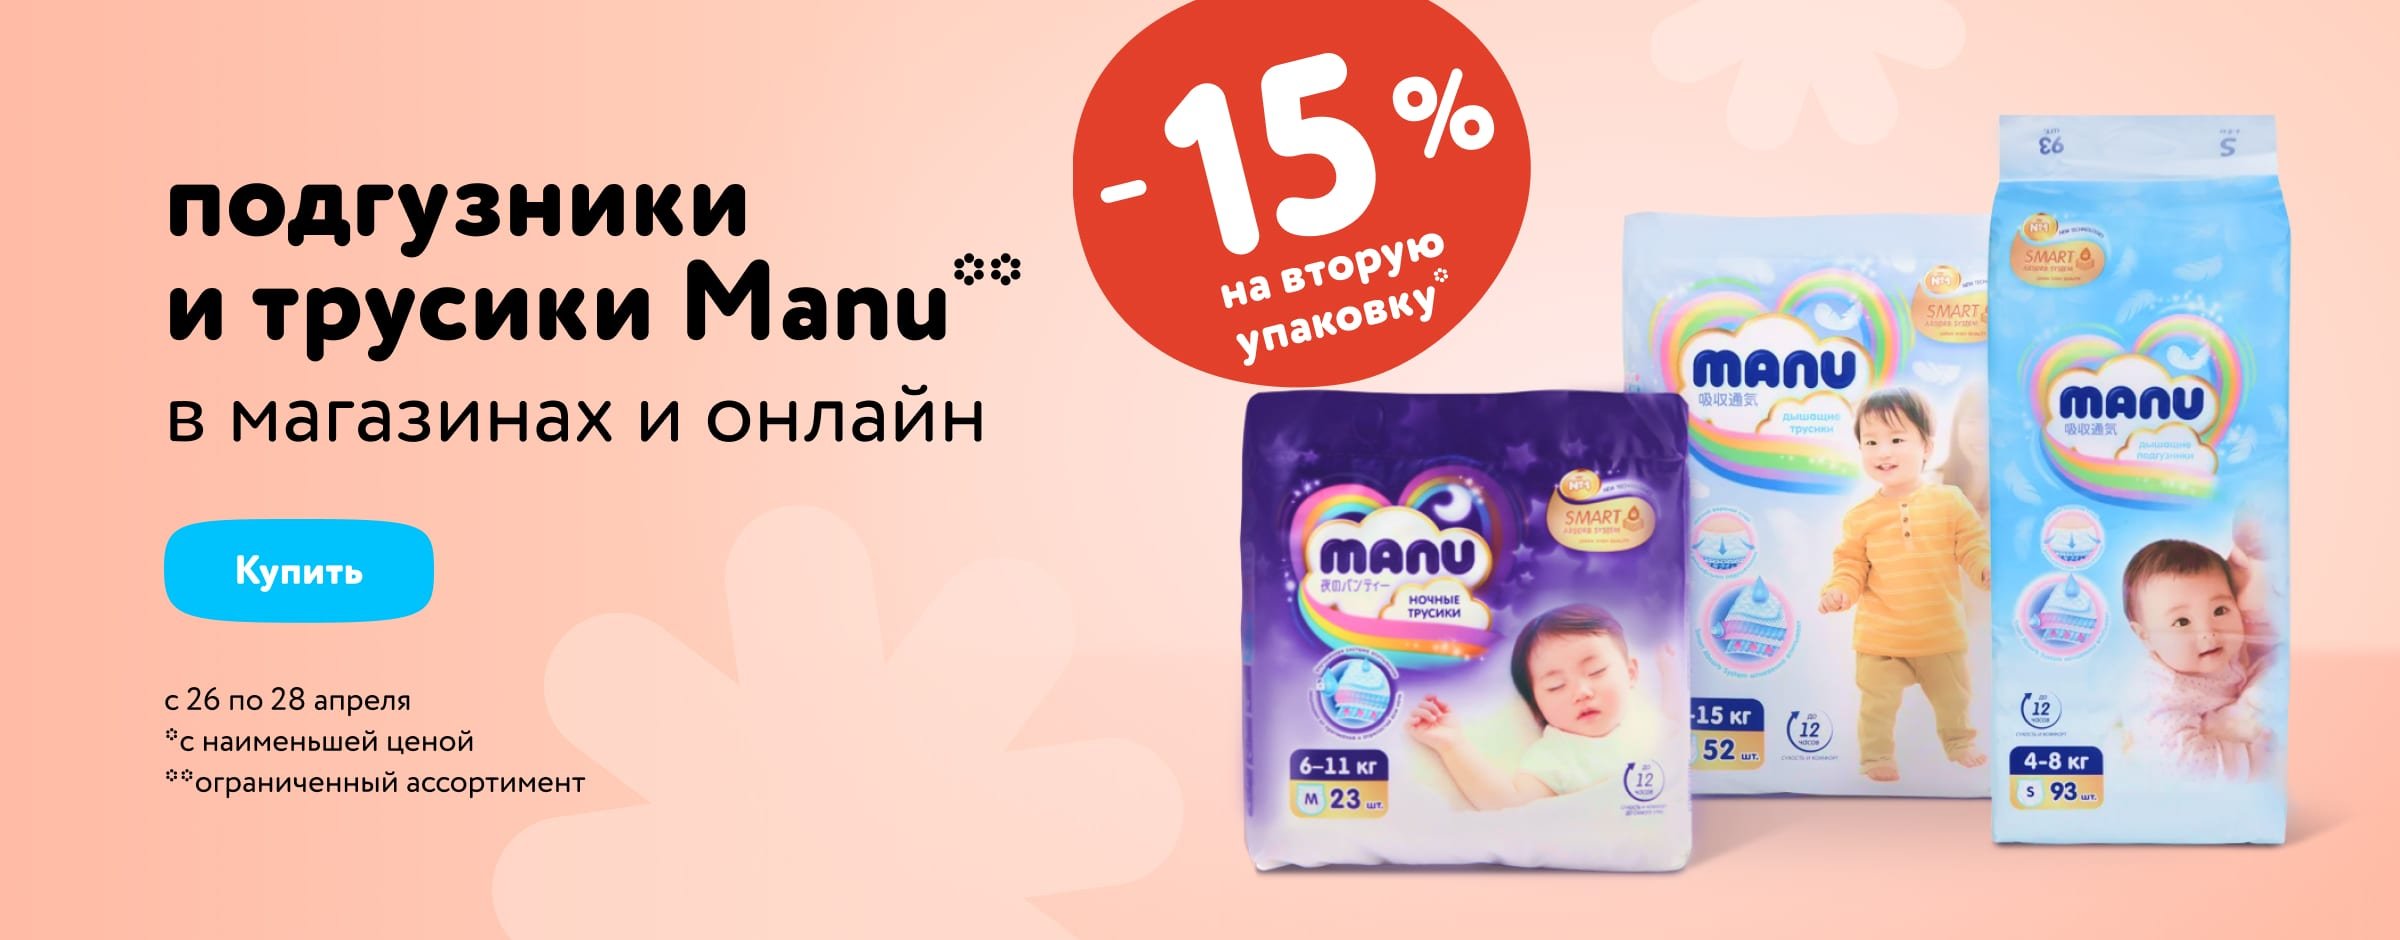 Доп. скидка 15 % на вторую упаковку подгузников и трусиков Manu